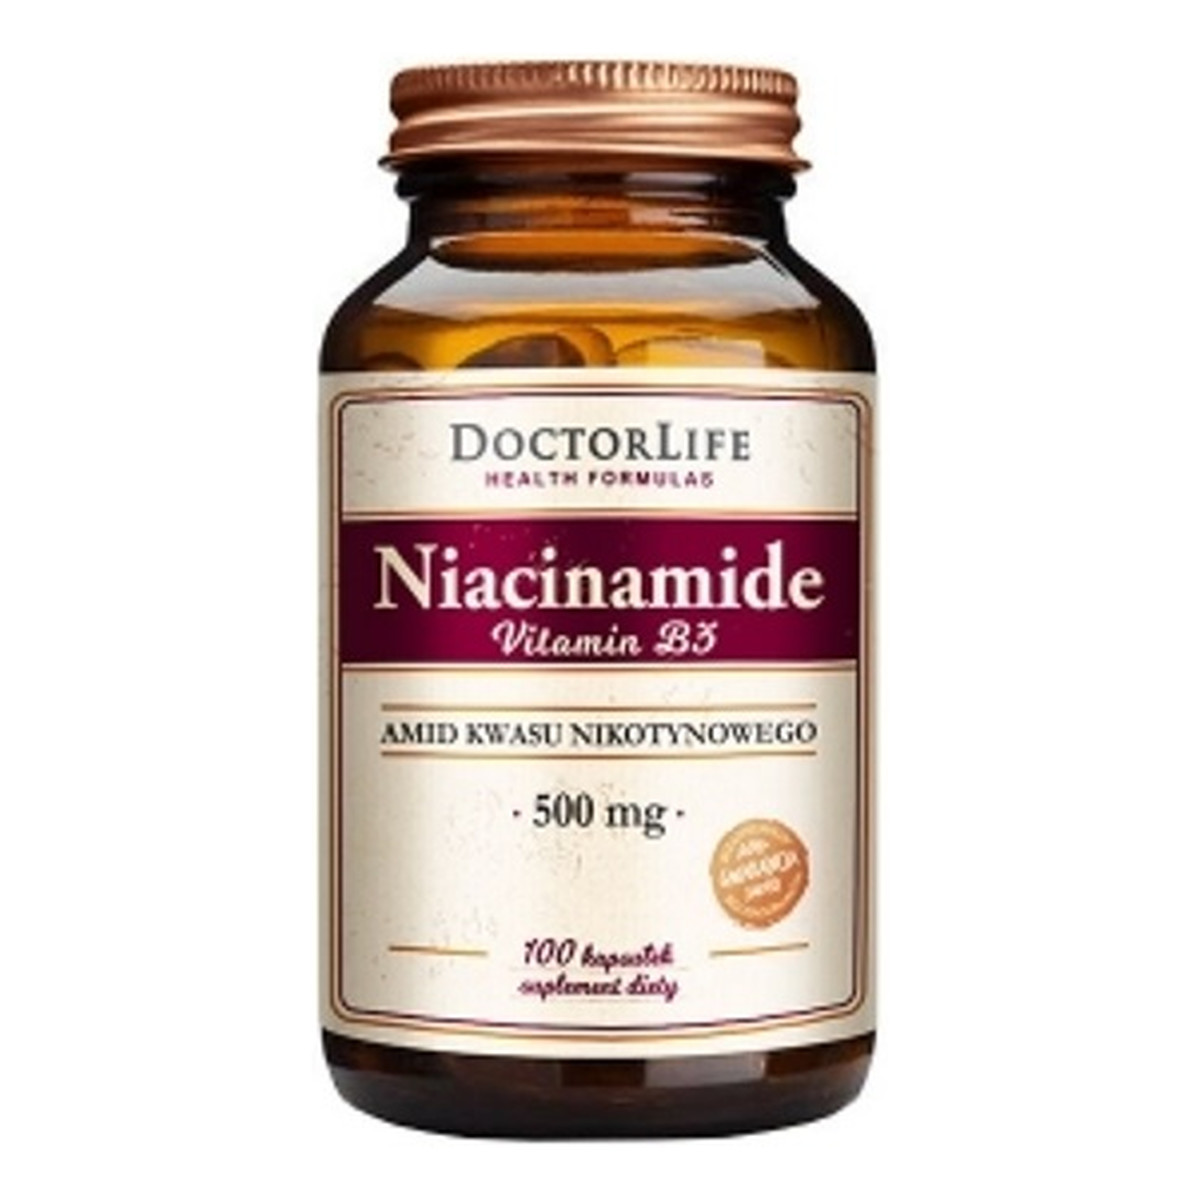 Doctor Life Niacinamide vitamin b3 amid kwasu nikotynowego 500mg suplement diety 100 kapsułek